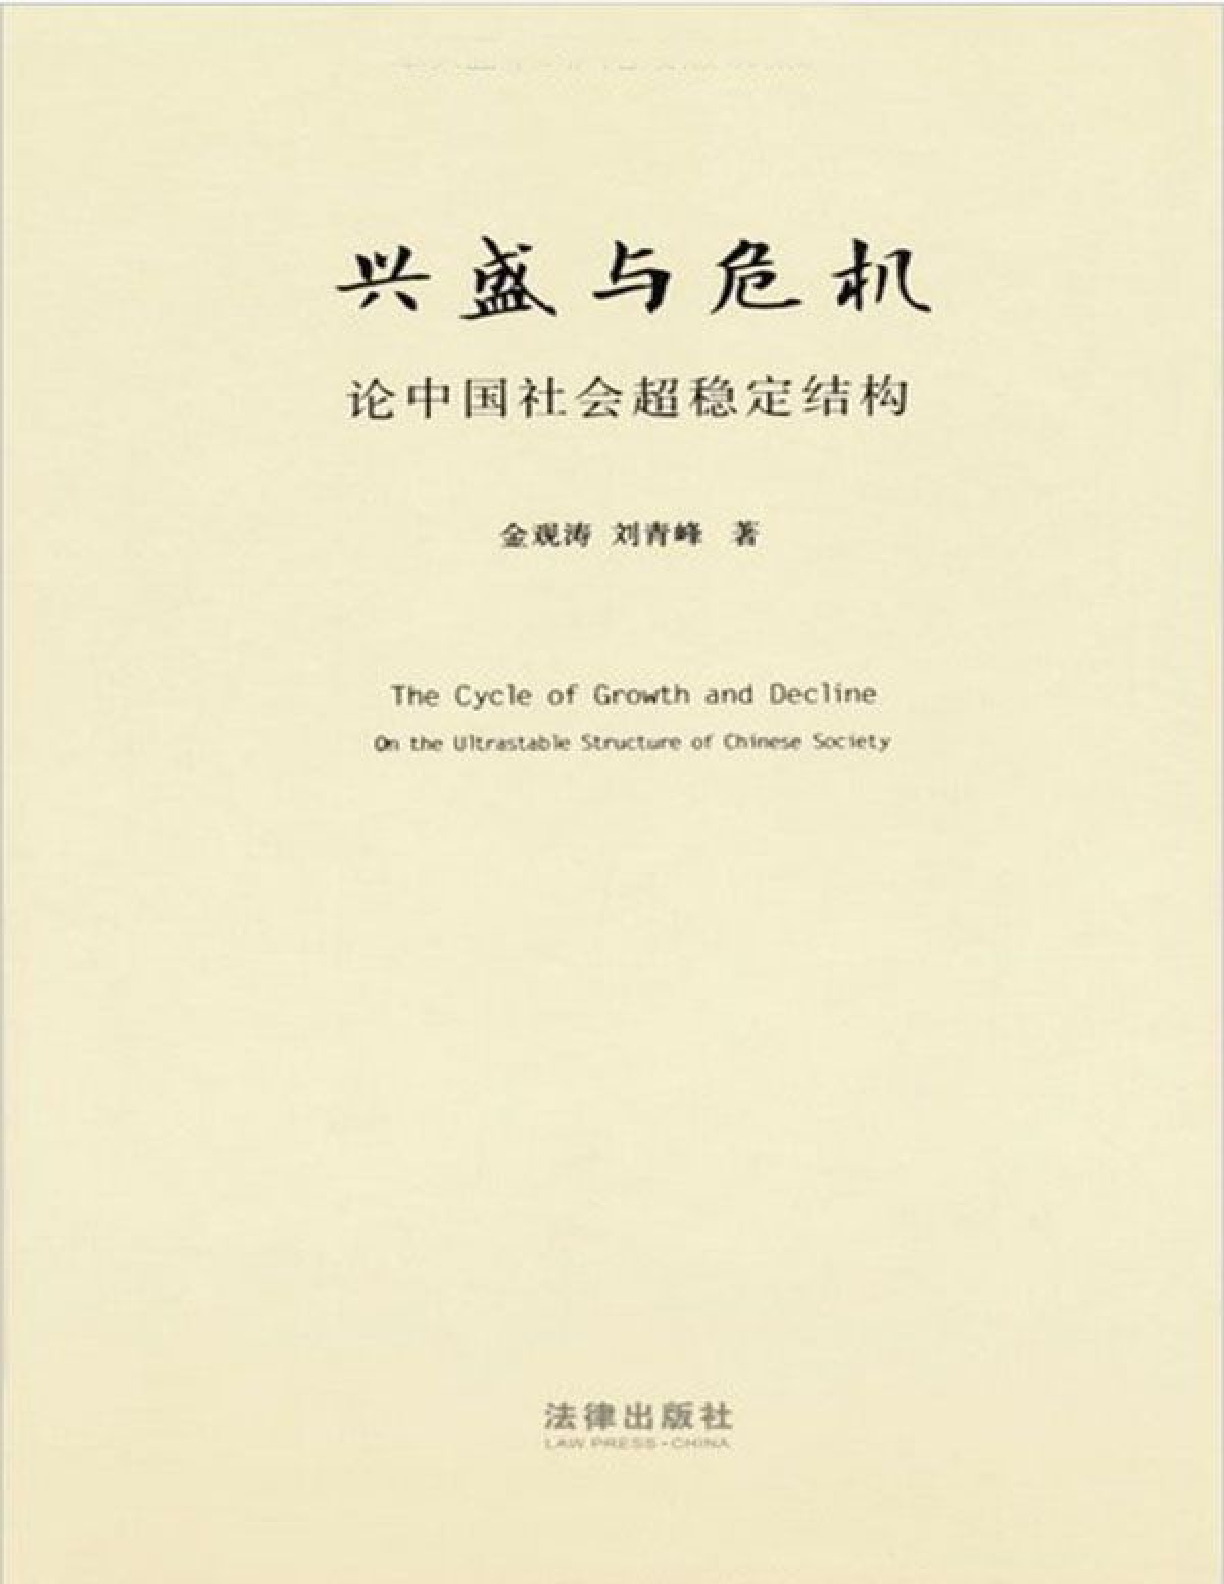 兴盛与危机：论中国社会超稳定结构 – 金观涛 & 刘青峰